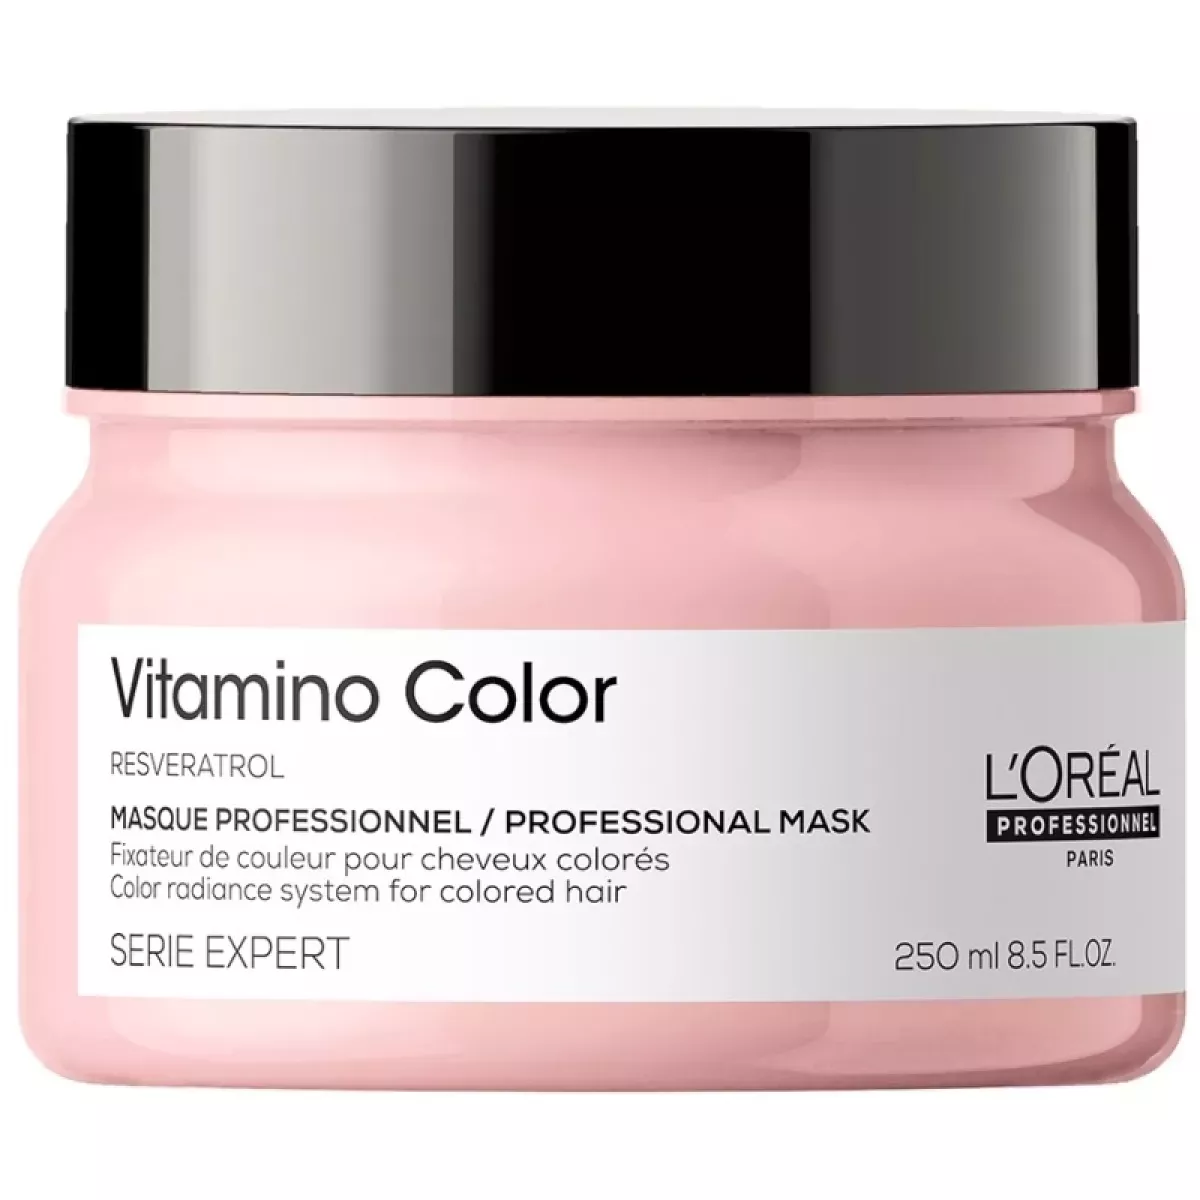 #1 - L'Oreal Pro Serie Expert Vitamino Color Masque 250 ml